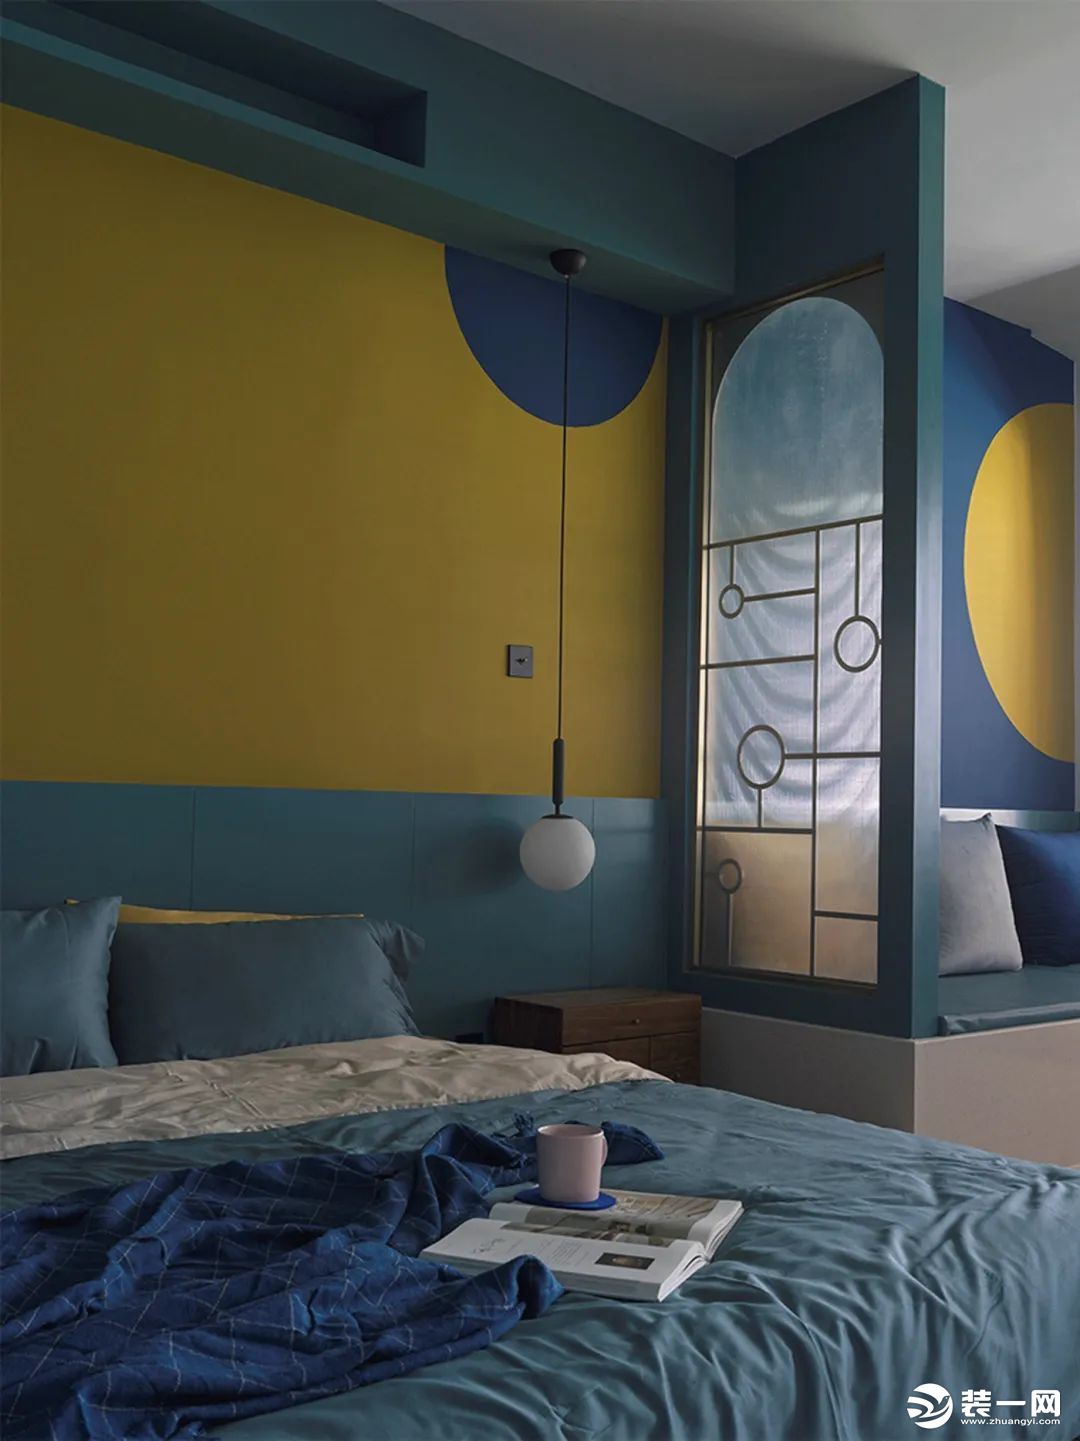 卧室与客厅空间开放的格局，蓝色的墙脚与天花，墙面在黄色基础加入深蓝色的圆点图案，也让空间显得更加艺术